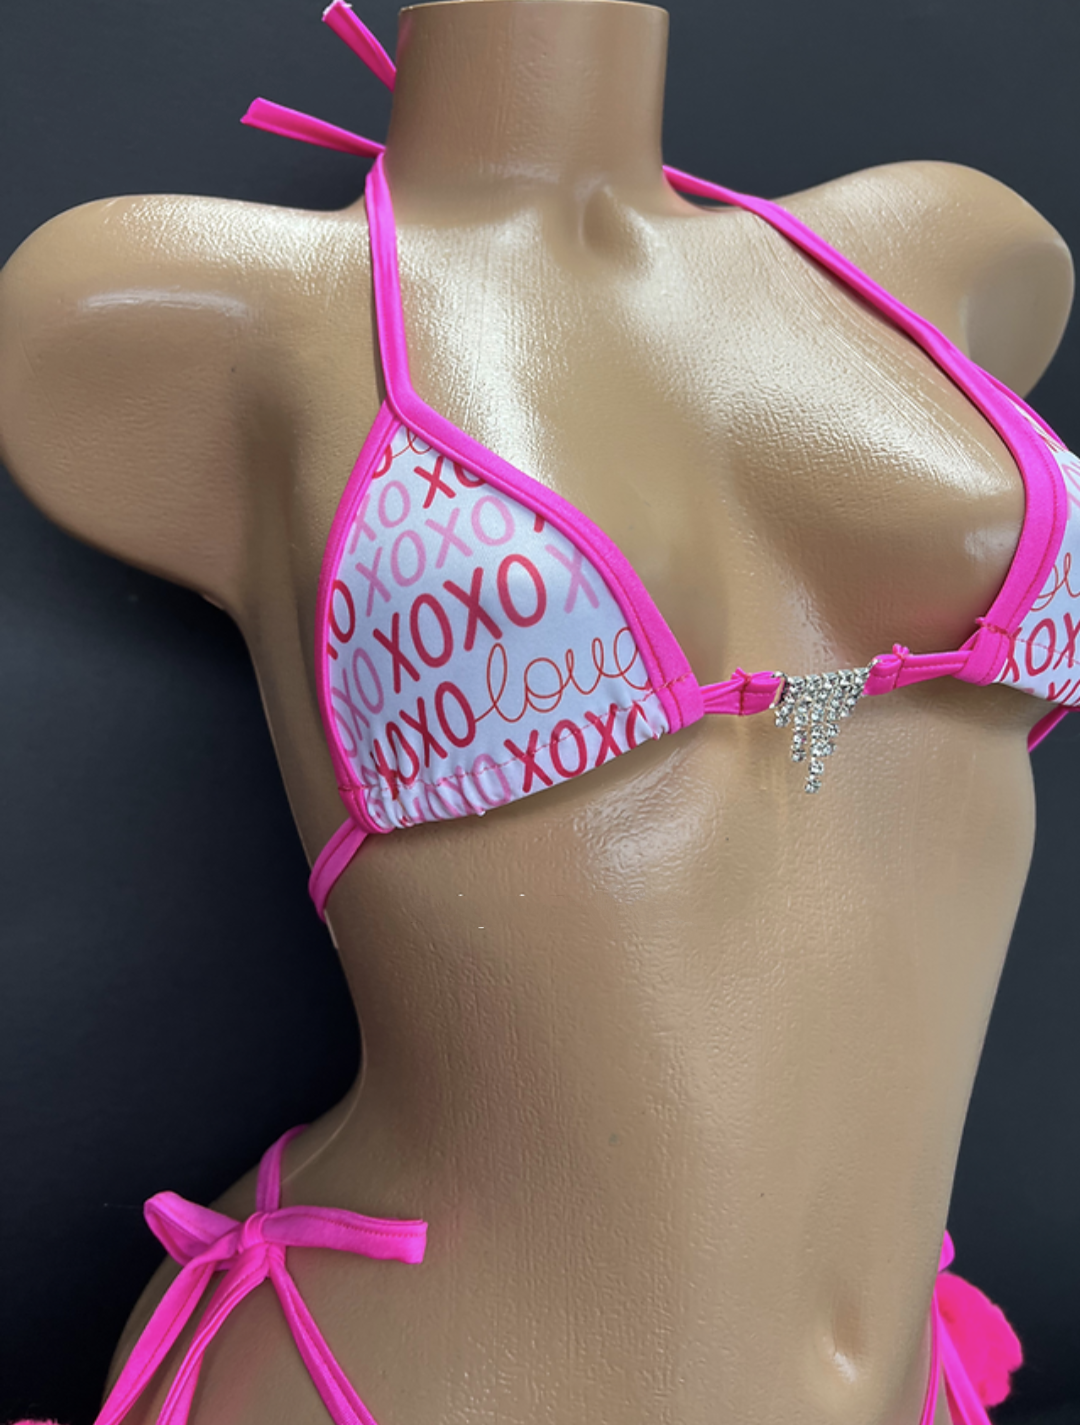 XOXO Bikini With Pom Poms (Size S/M)